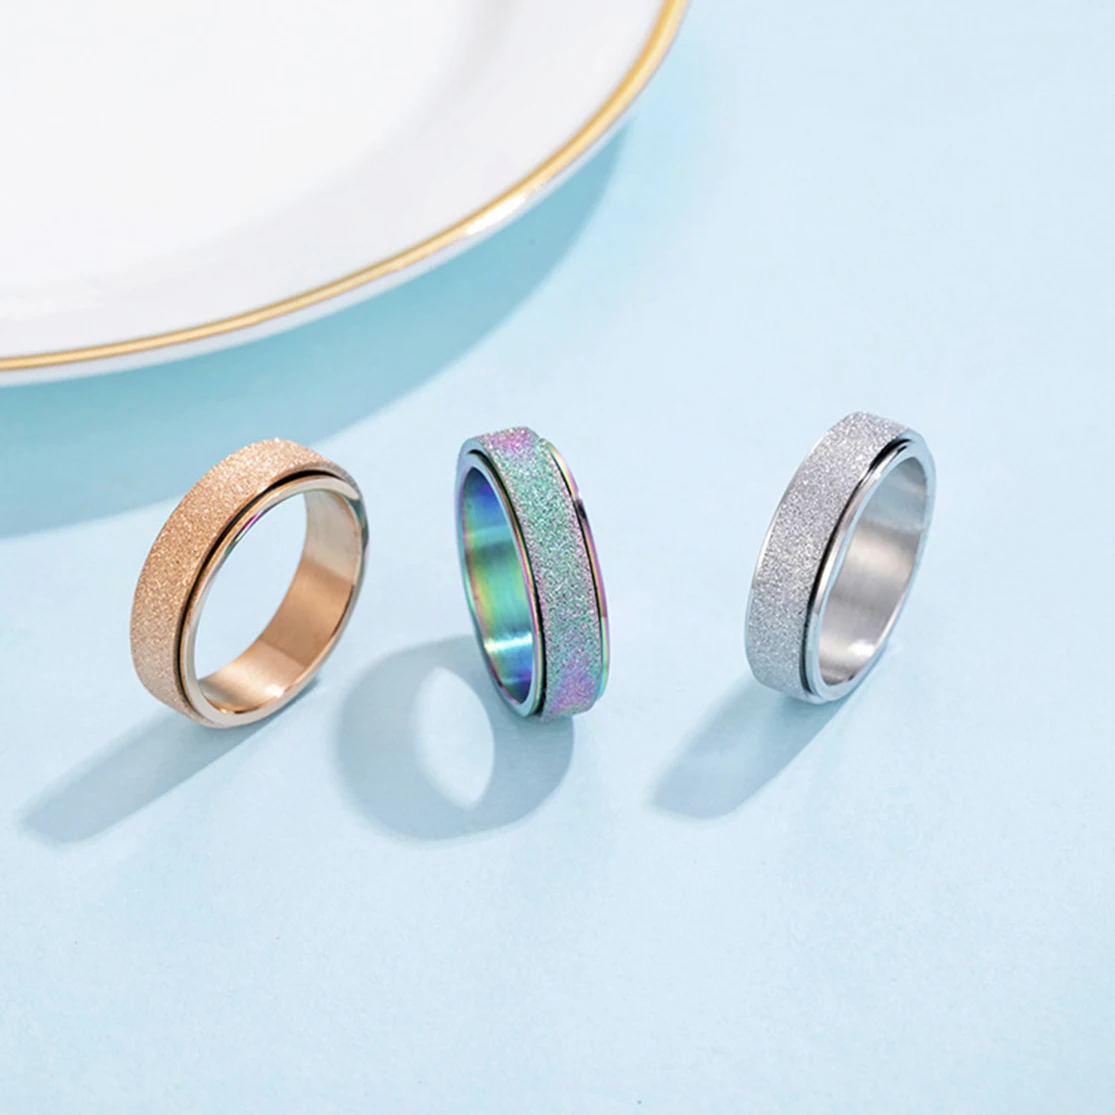 Для женщин Титан Сталь скраб Спиннер вращается кольца песочной отделкой Спиннер обручальное кольцо из розового золота, радужной расцветки для беспокойства кольца размеры на возраст 4, 5-11